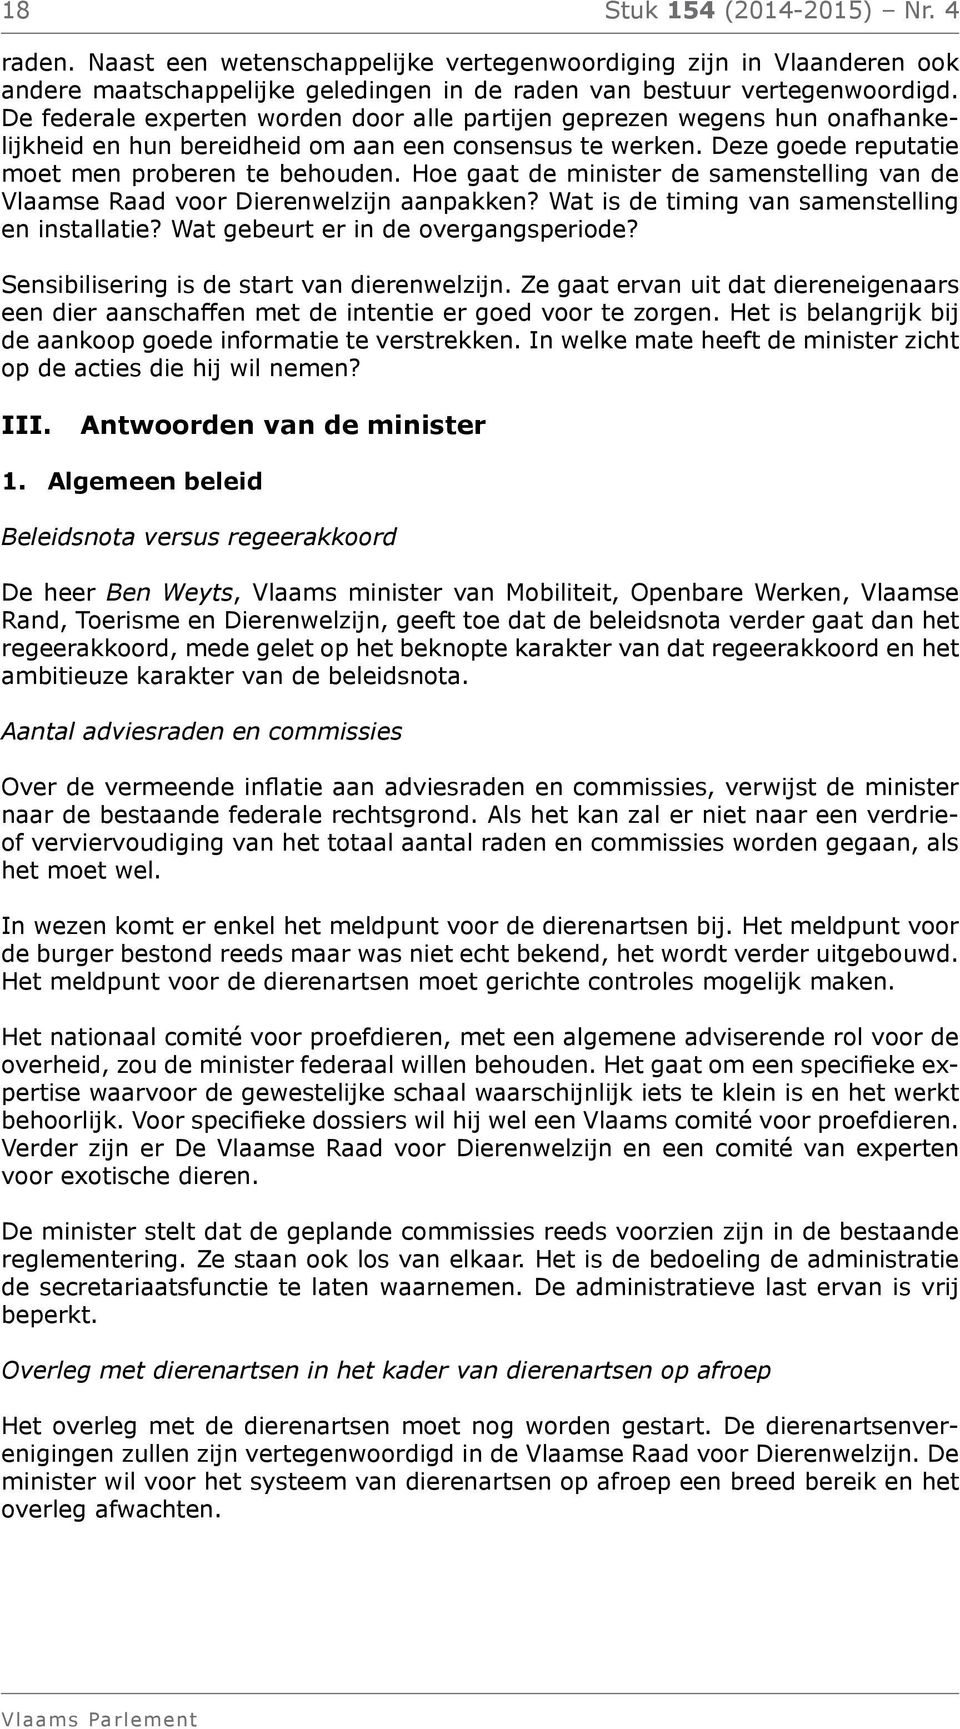 Hoe gaat de minister de samenstelling van de Vlaamse Raad voor Dierenwelzijn aanpakken? Wat is de timing van samenstelling en installatie? Wat gebeurt er in de overgangsperiode?